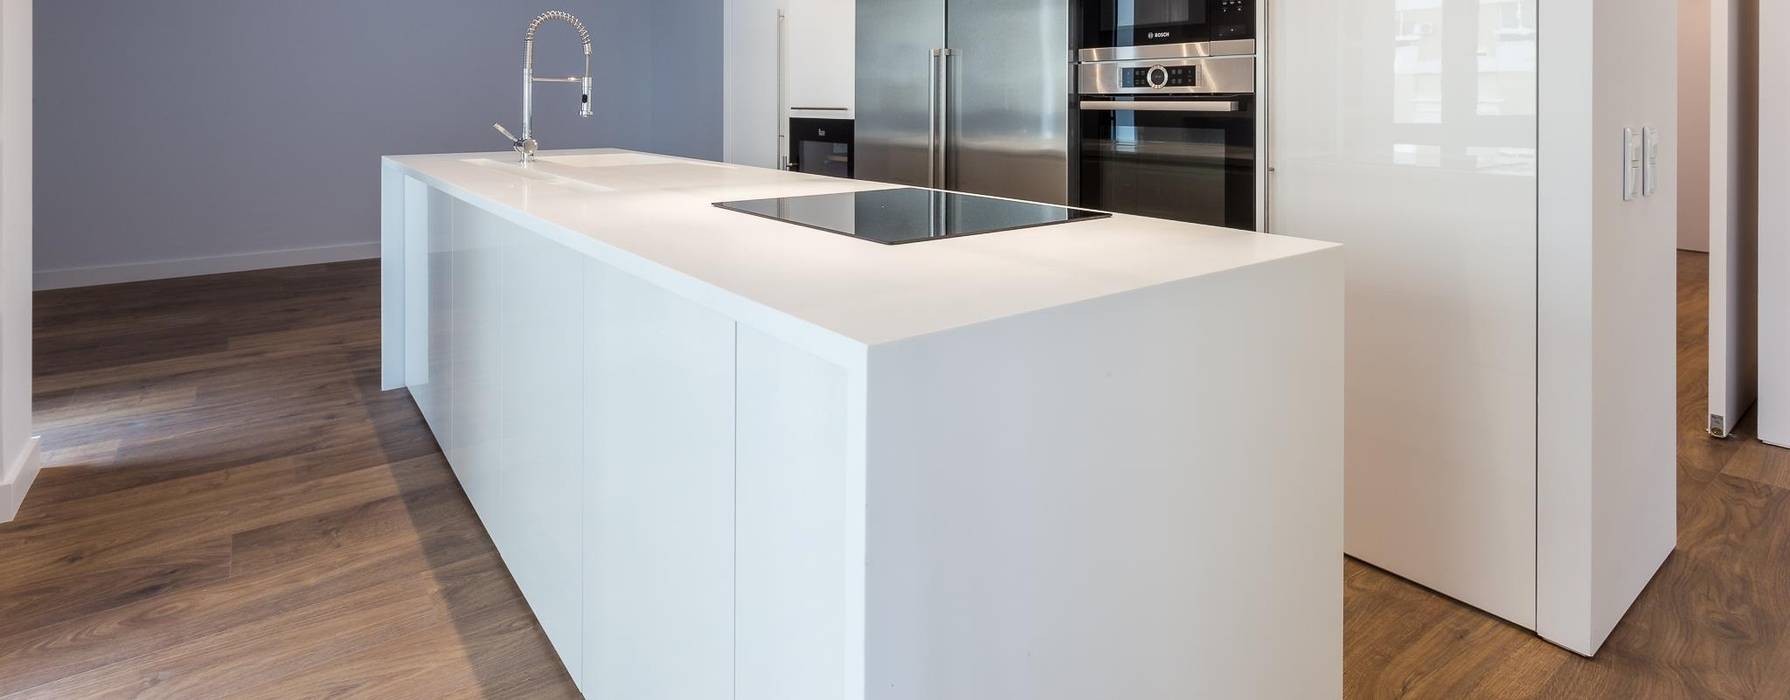 Projeto de cozinha com chão em mdadeira, DIONI Home Design DIONI Home Design Modern Kitchen MDF Cabinets & shelves